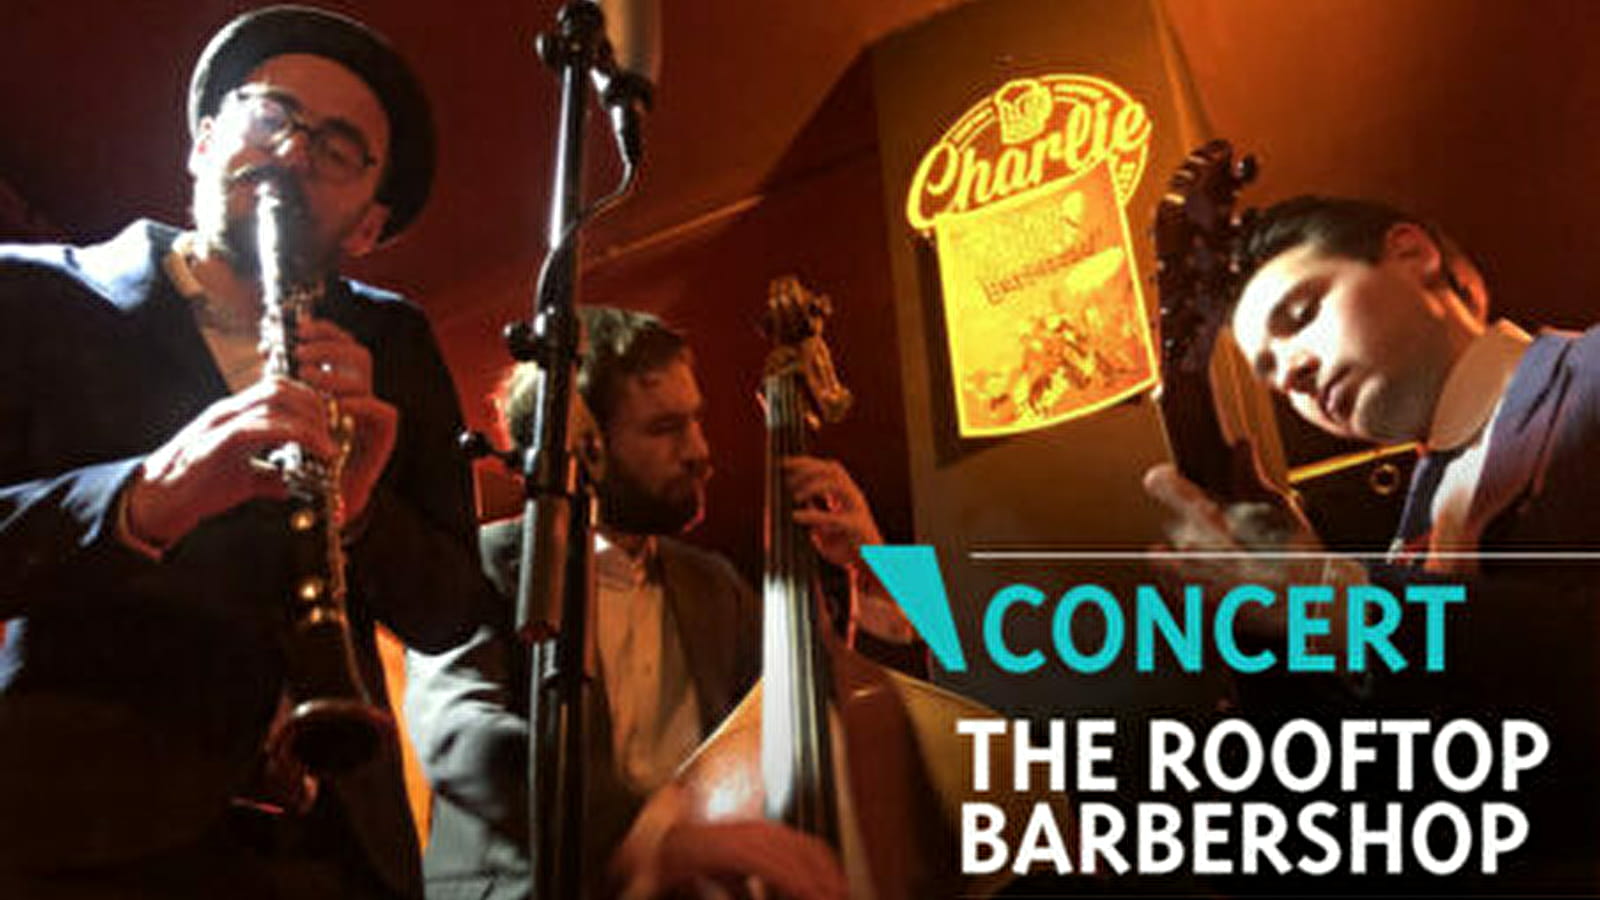 ♪♫ Concert 'The Rooftop Barbershop'